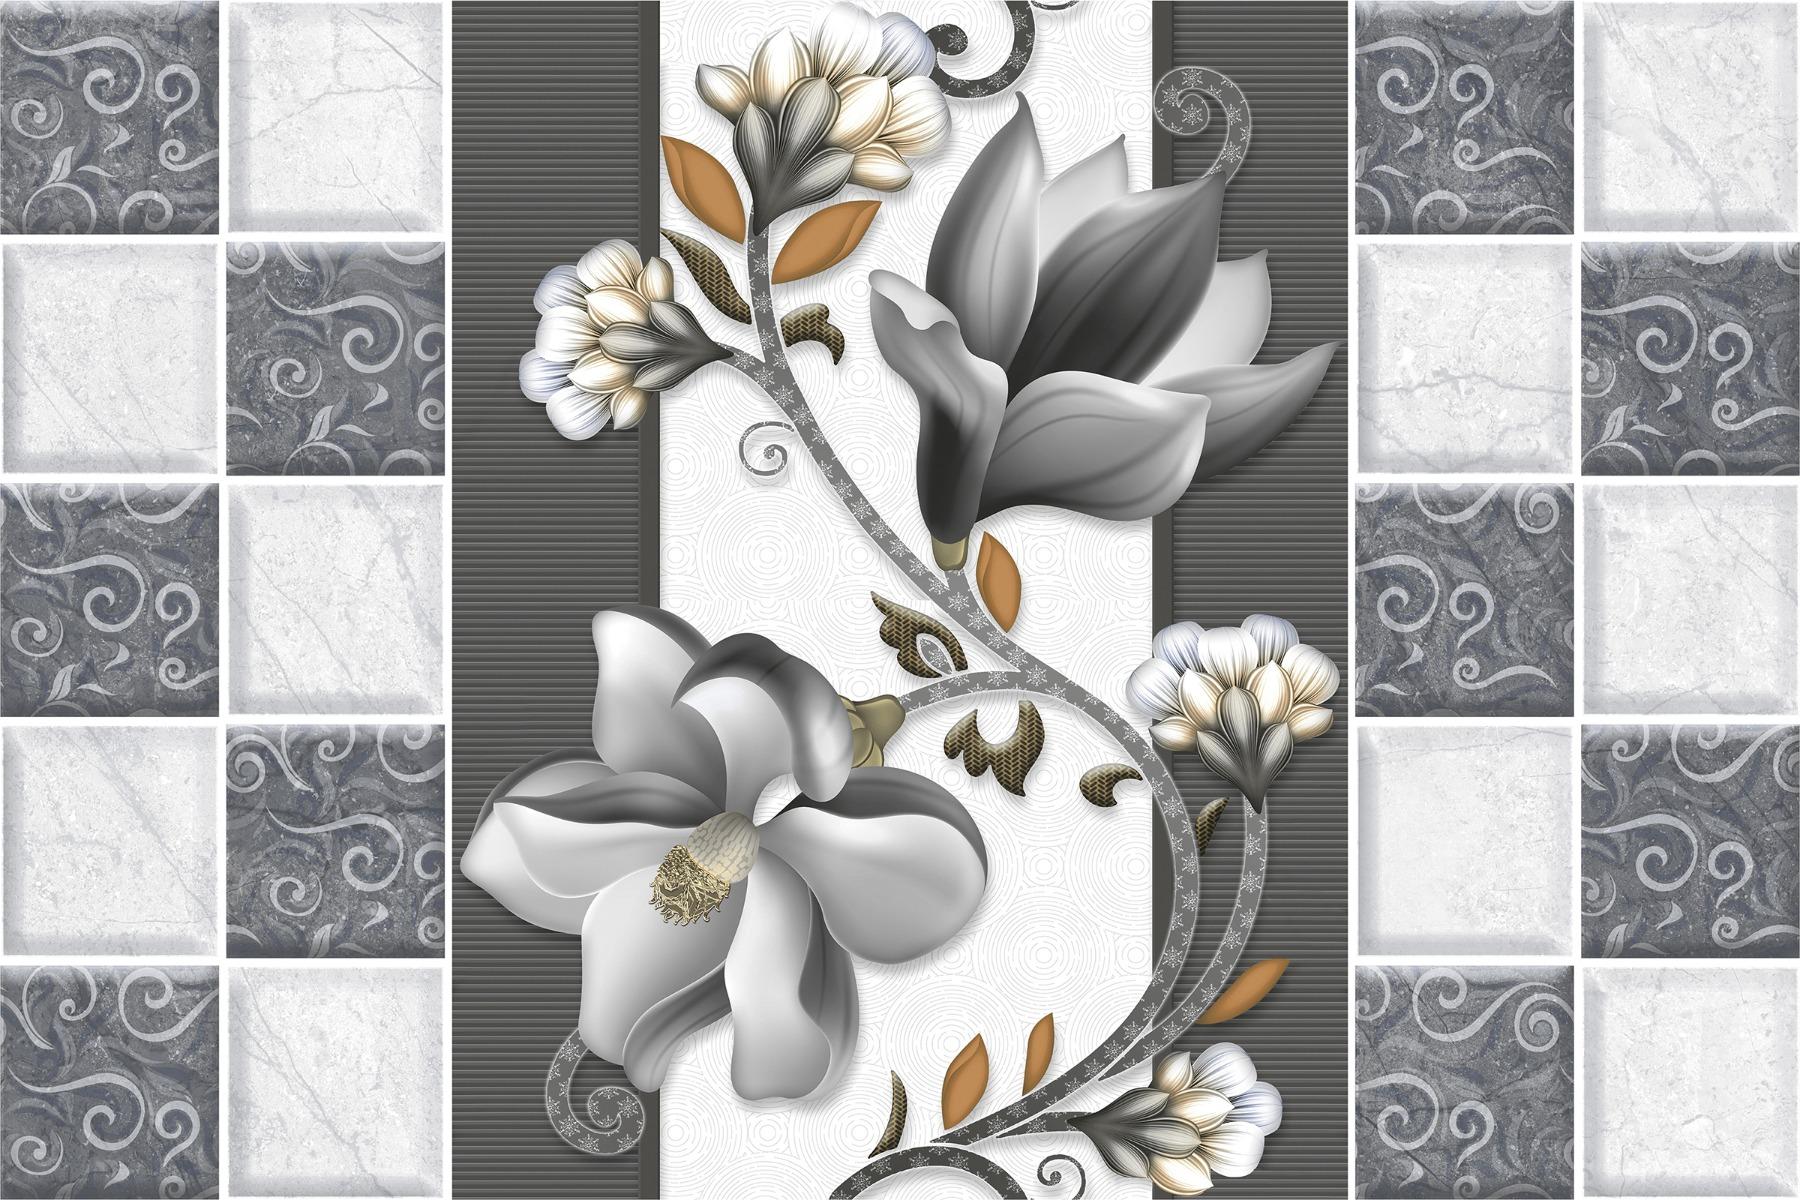 Stylized Tiles for Bathroom Tiles, Living Room Tiles, Kitchen Tiles, Bedroom Tiles, Balcony Tiles